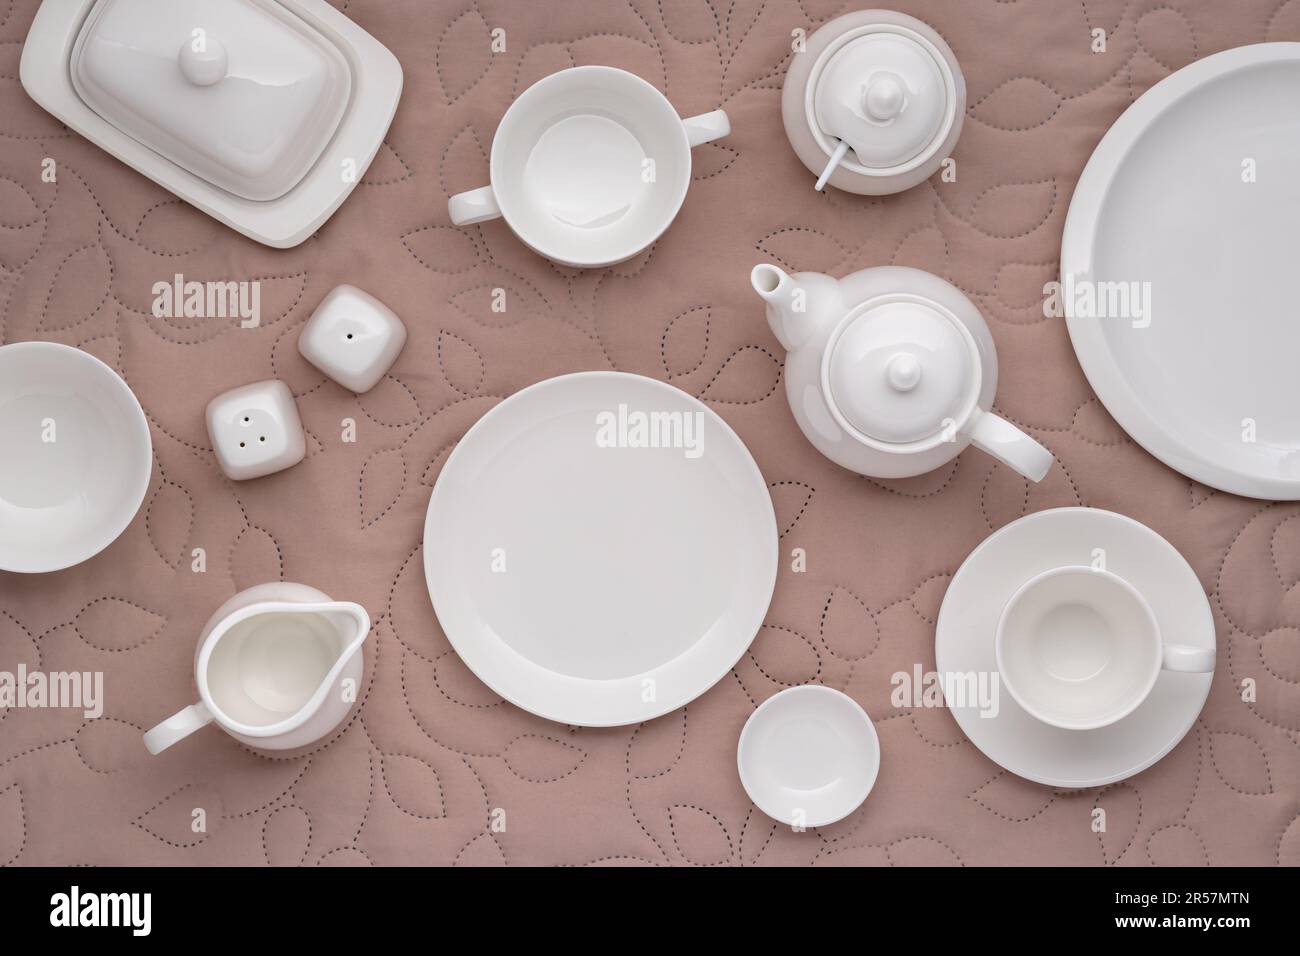 Weißes Porzellan-Geschirr zum Servieren und Essen von Mahlzeiten. Leere saubere Teller, Tasse, Teekanne, Zuckerdose, Milchkanne und Butterschale auf einem Tisch mit beigefarbenem fa Stockfoto